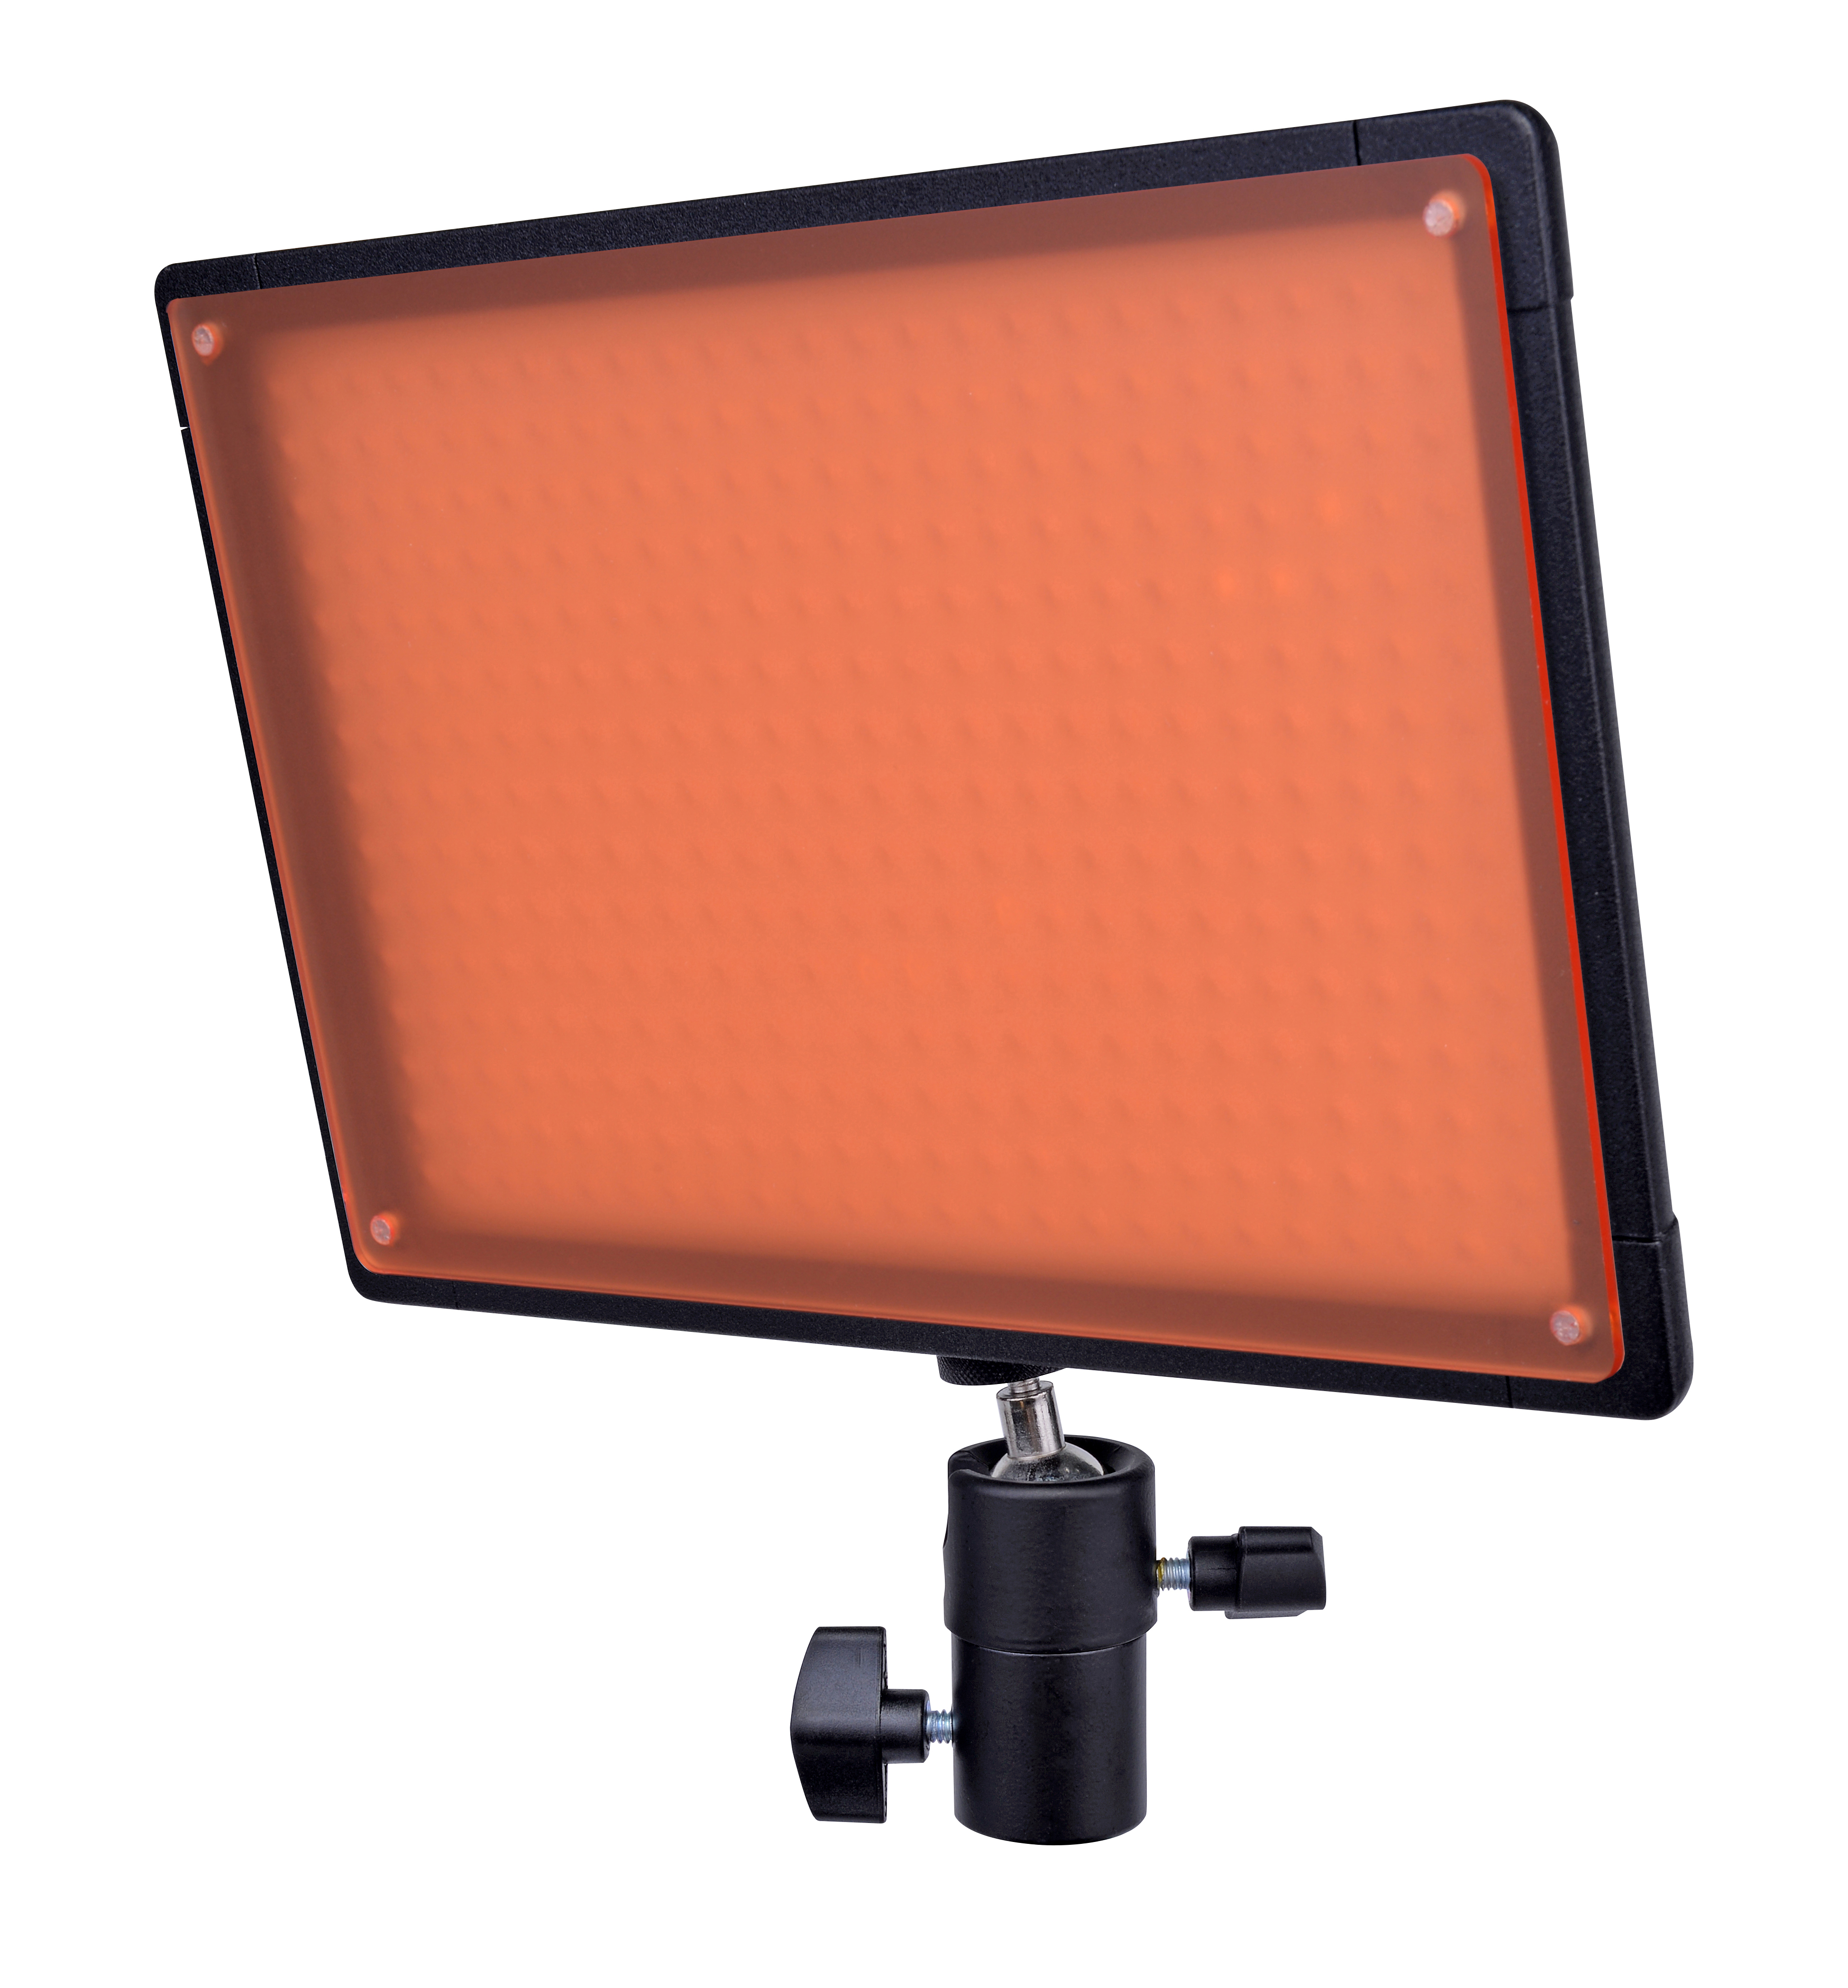 BRESSER LED SH-360 (21.6 W / 2,500 LUX) Slimline Studio Lamp